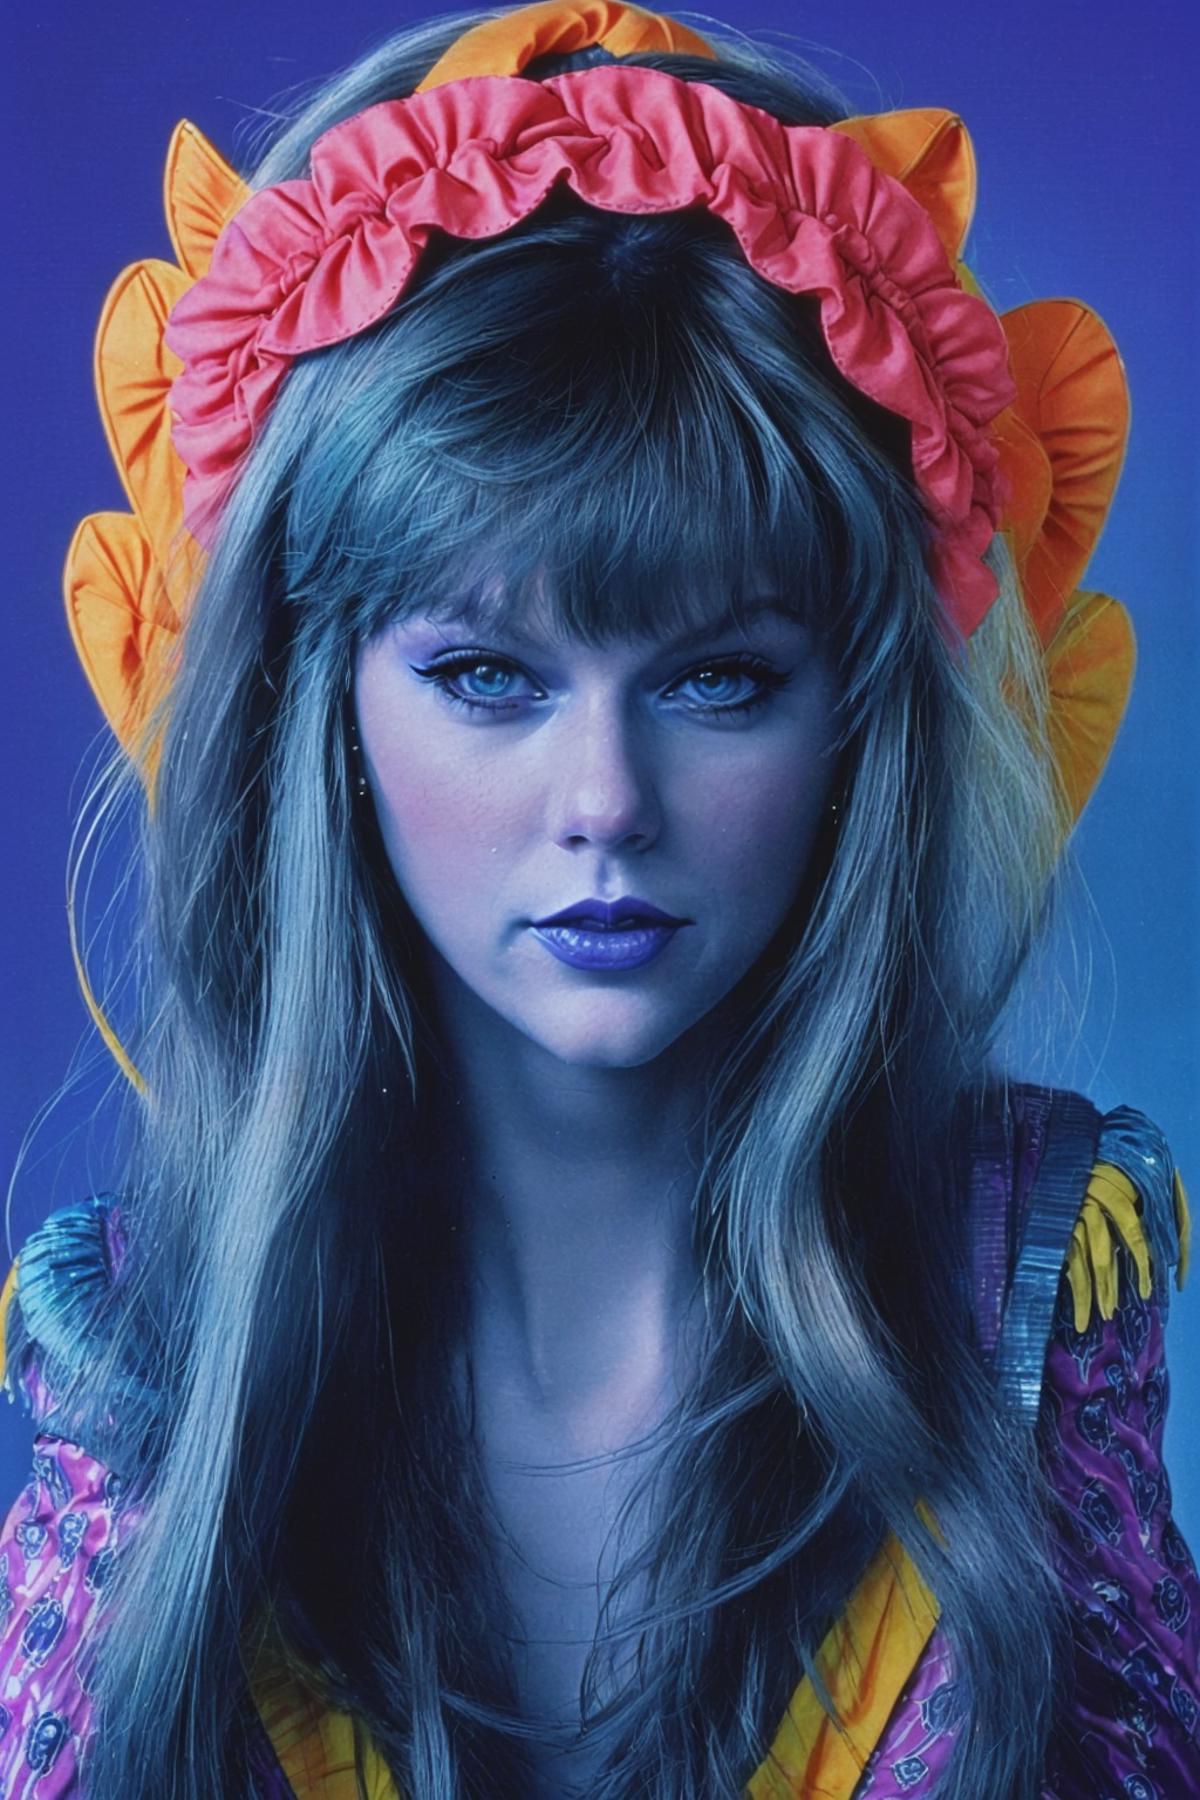 Taylor Swift image by Lukebones101